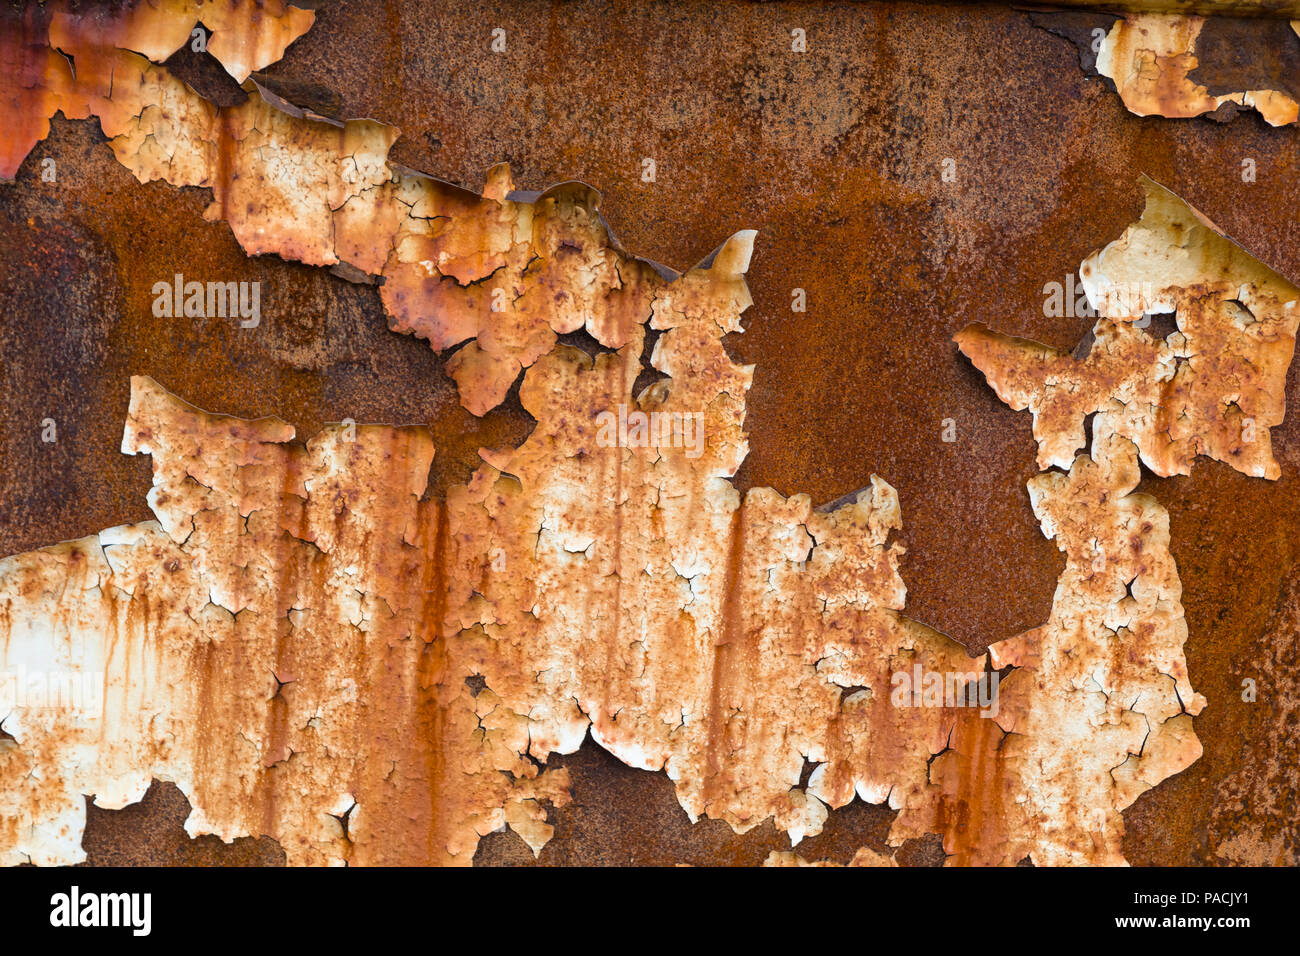 Cerca de Rusted metal corroído y pintura desconchada Foto de stock